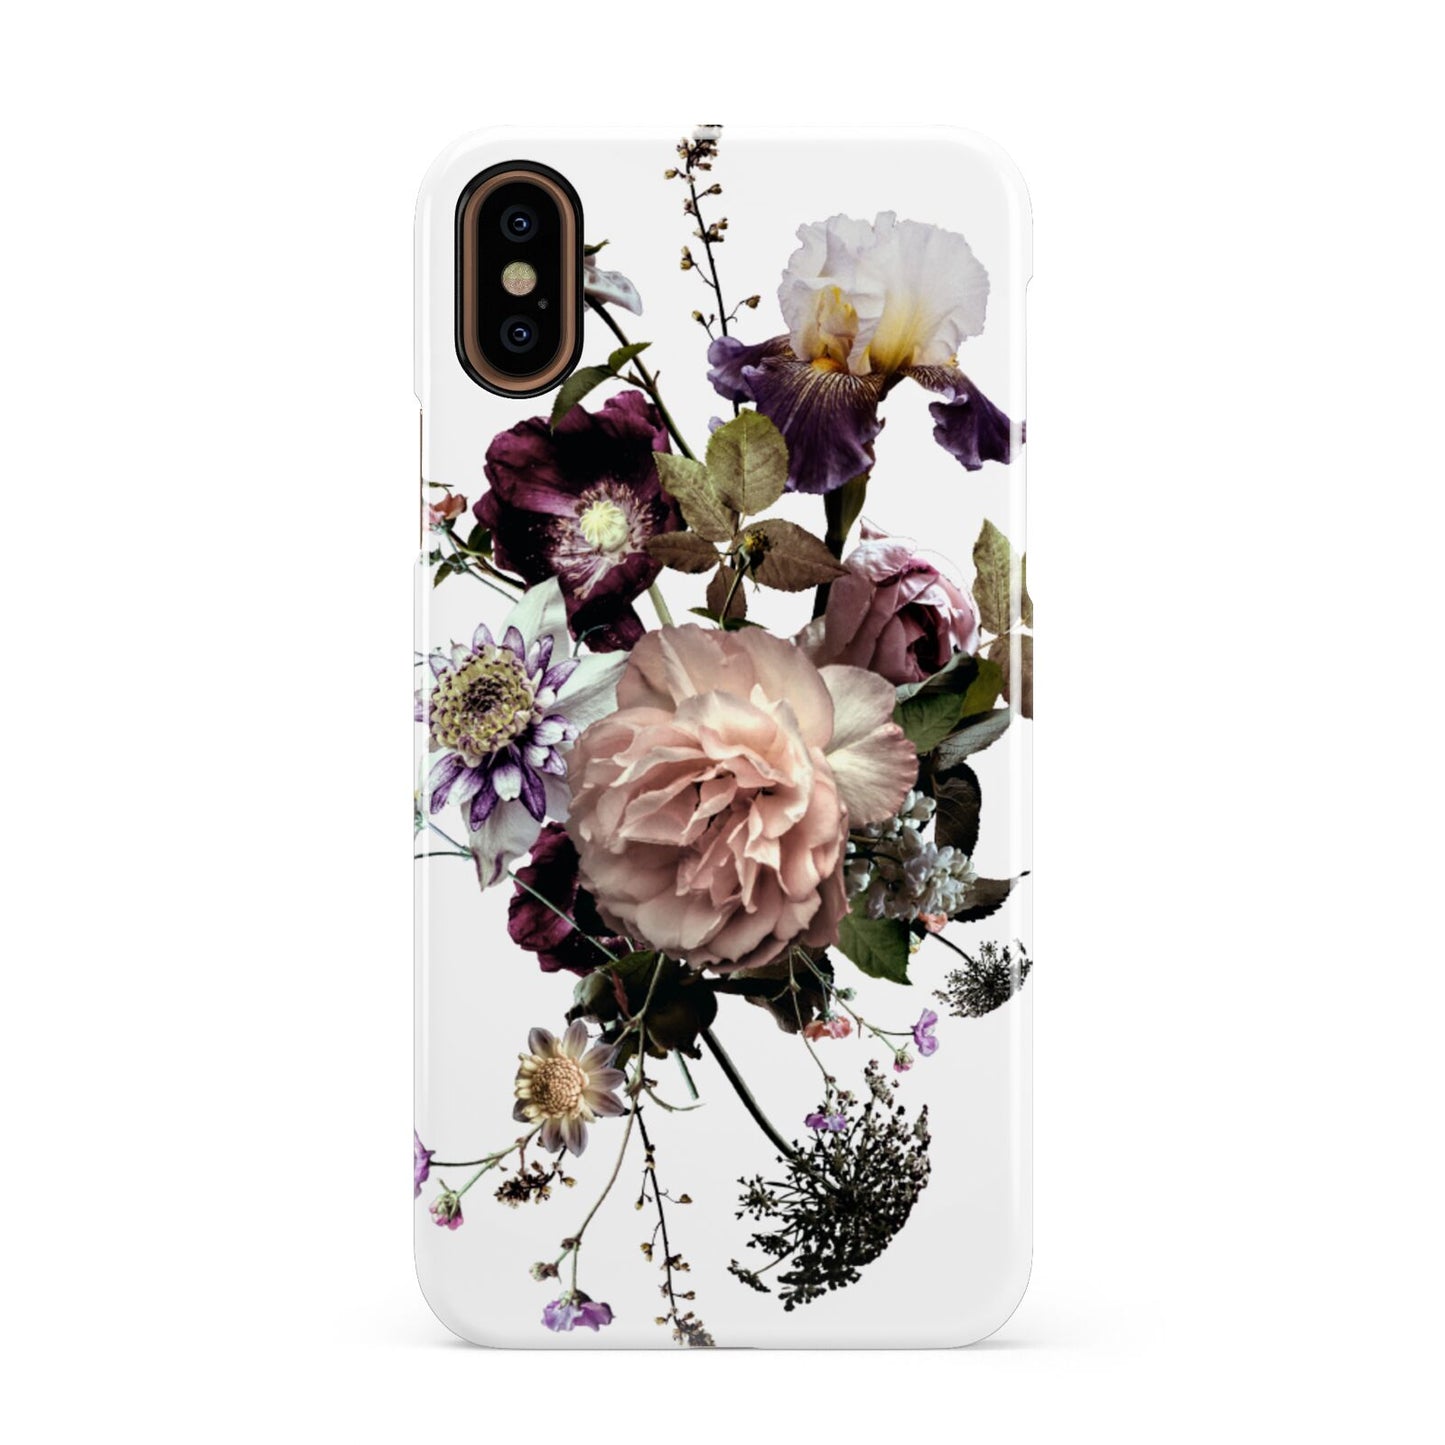 Vintage Flowers Apple iPhone XS 3D Snap Case